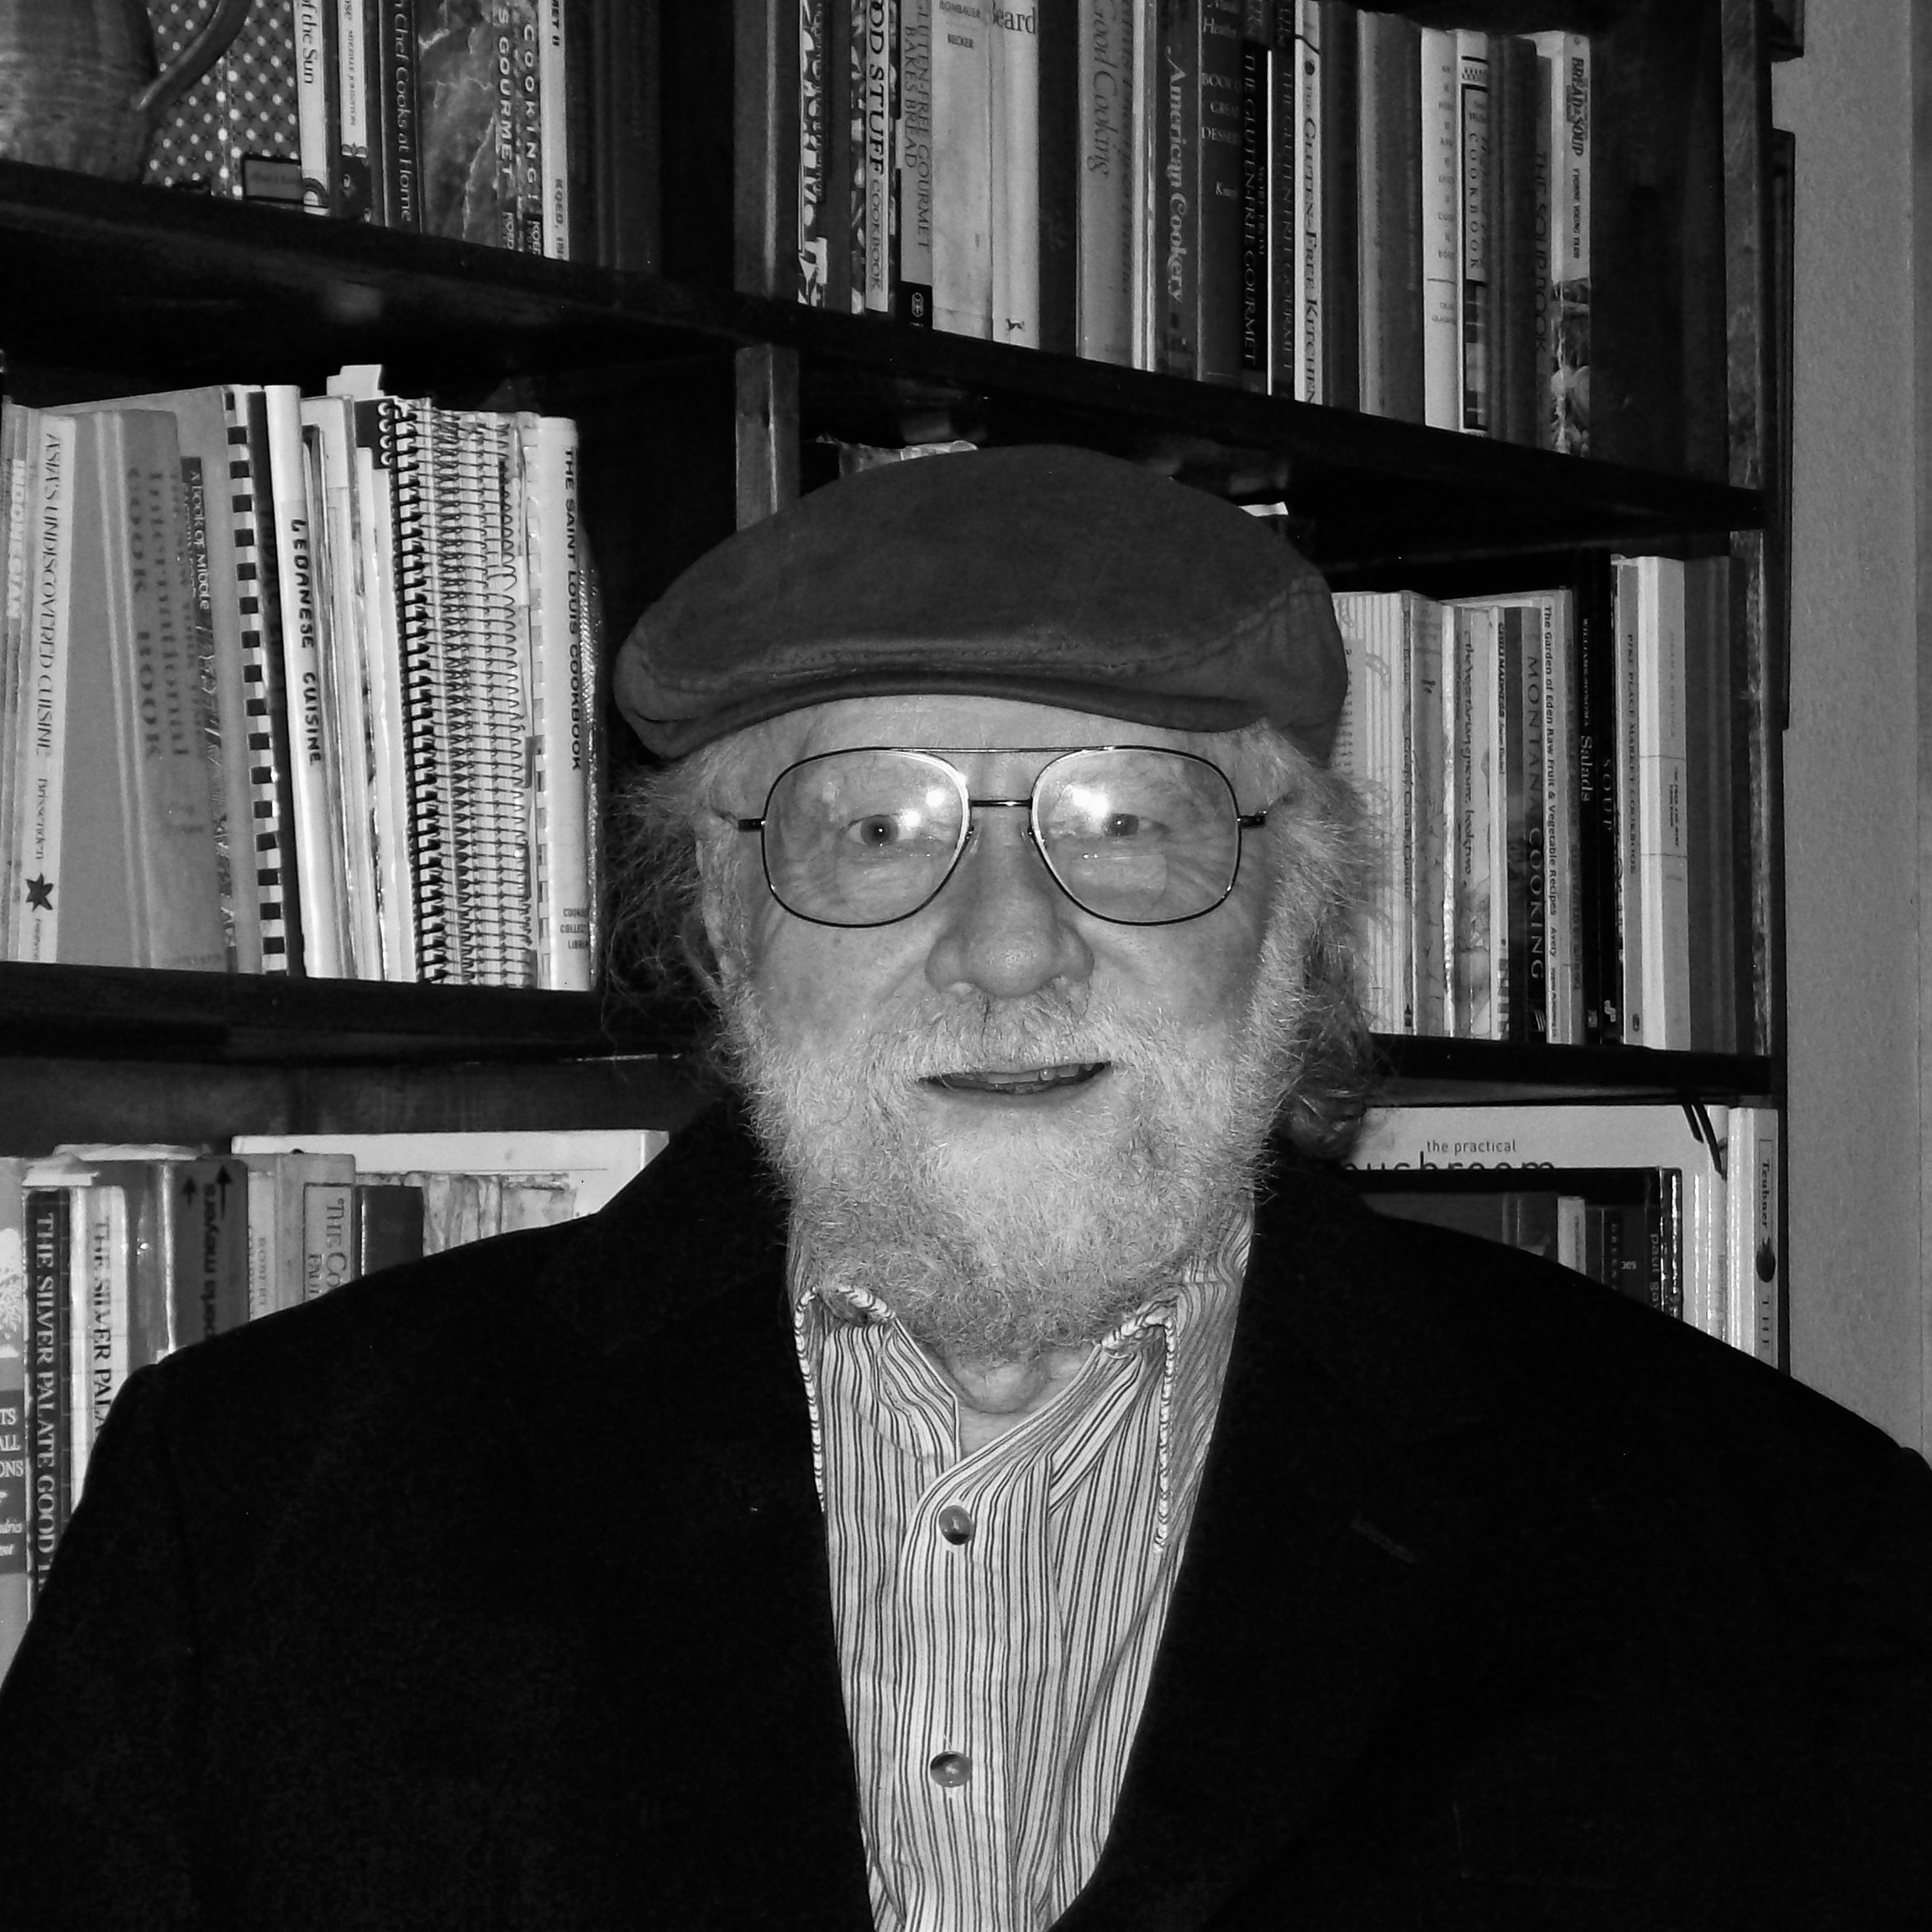 Photograph of Don Doig standing beside a bookshelf